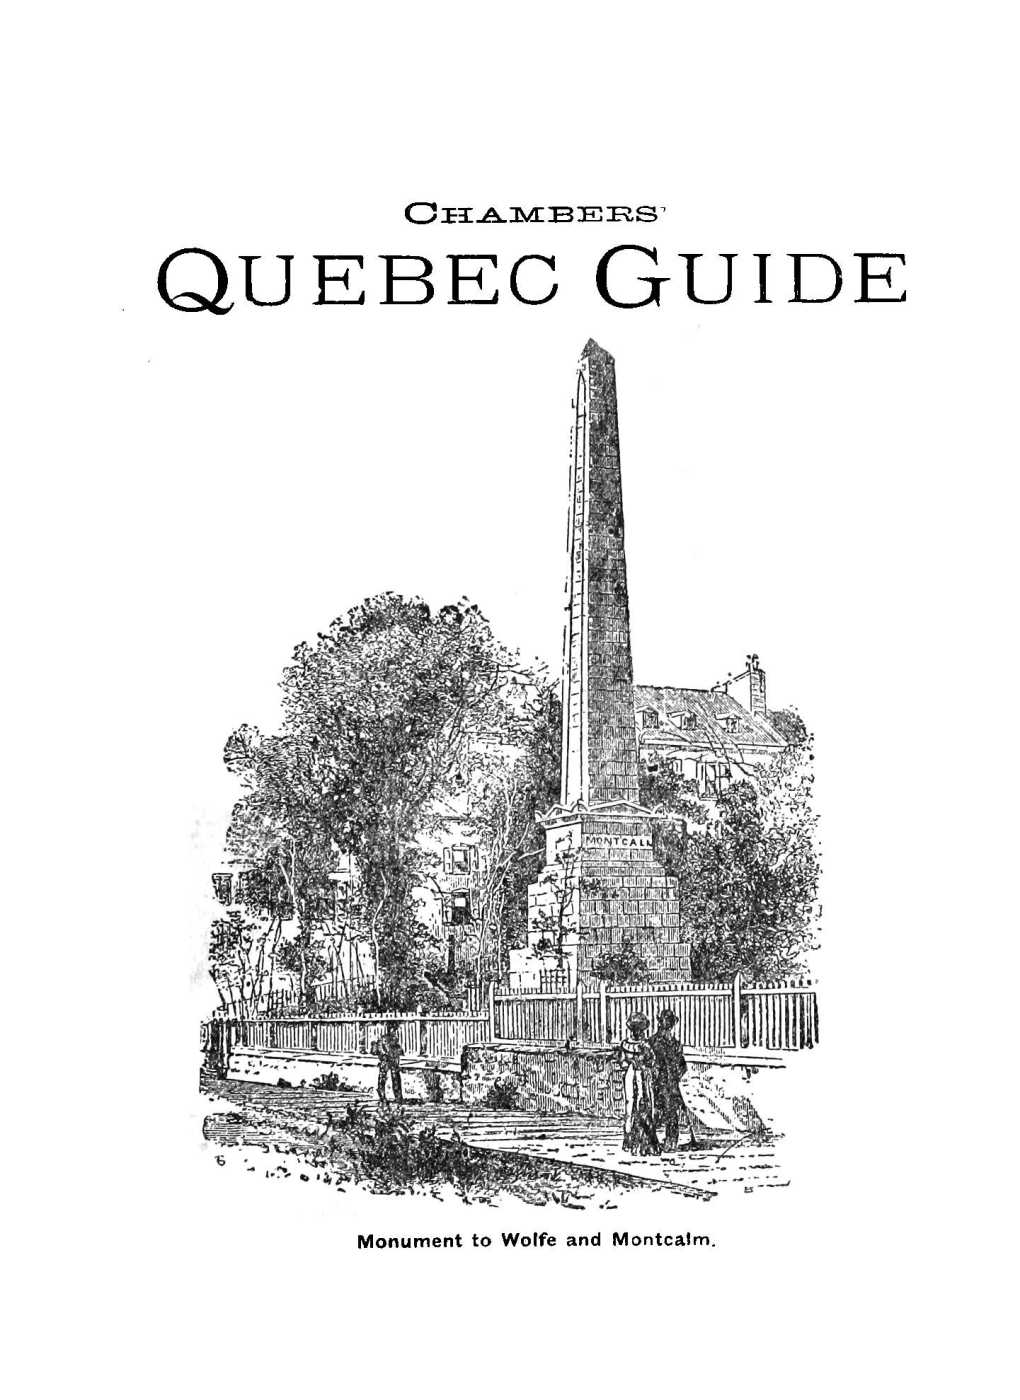 Quebec Guide